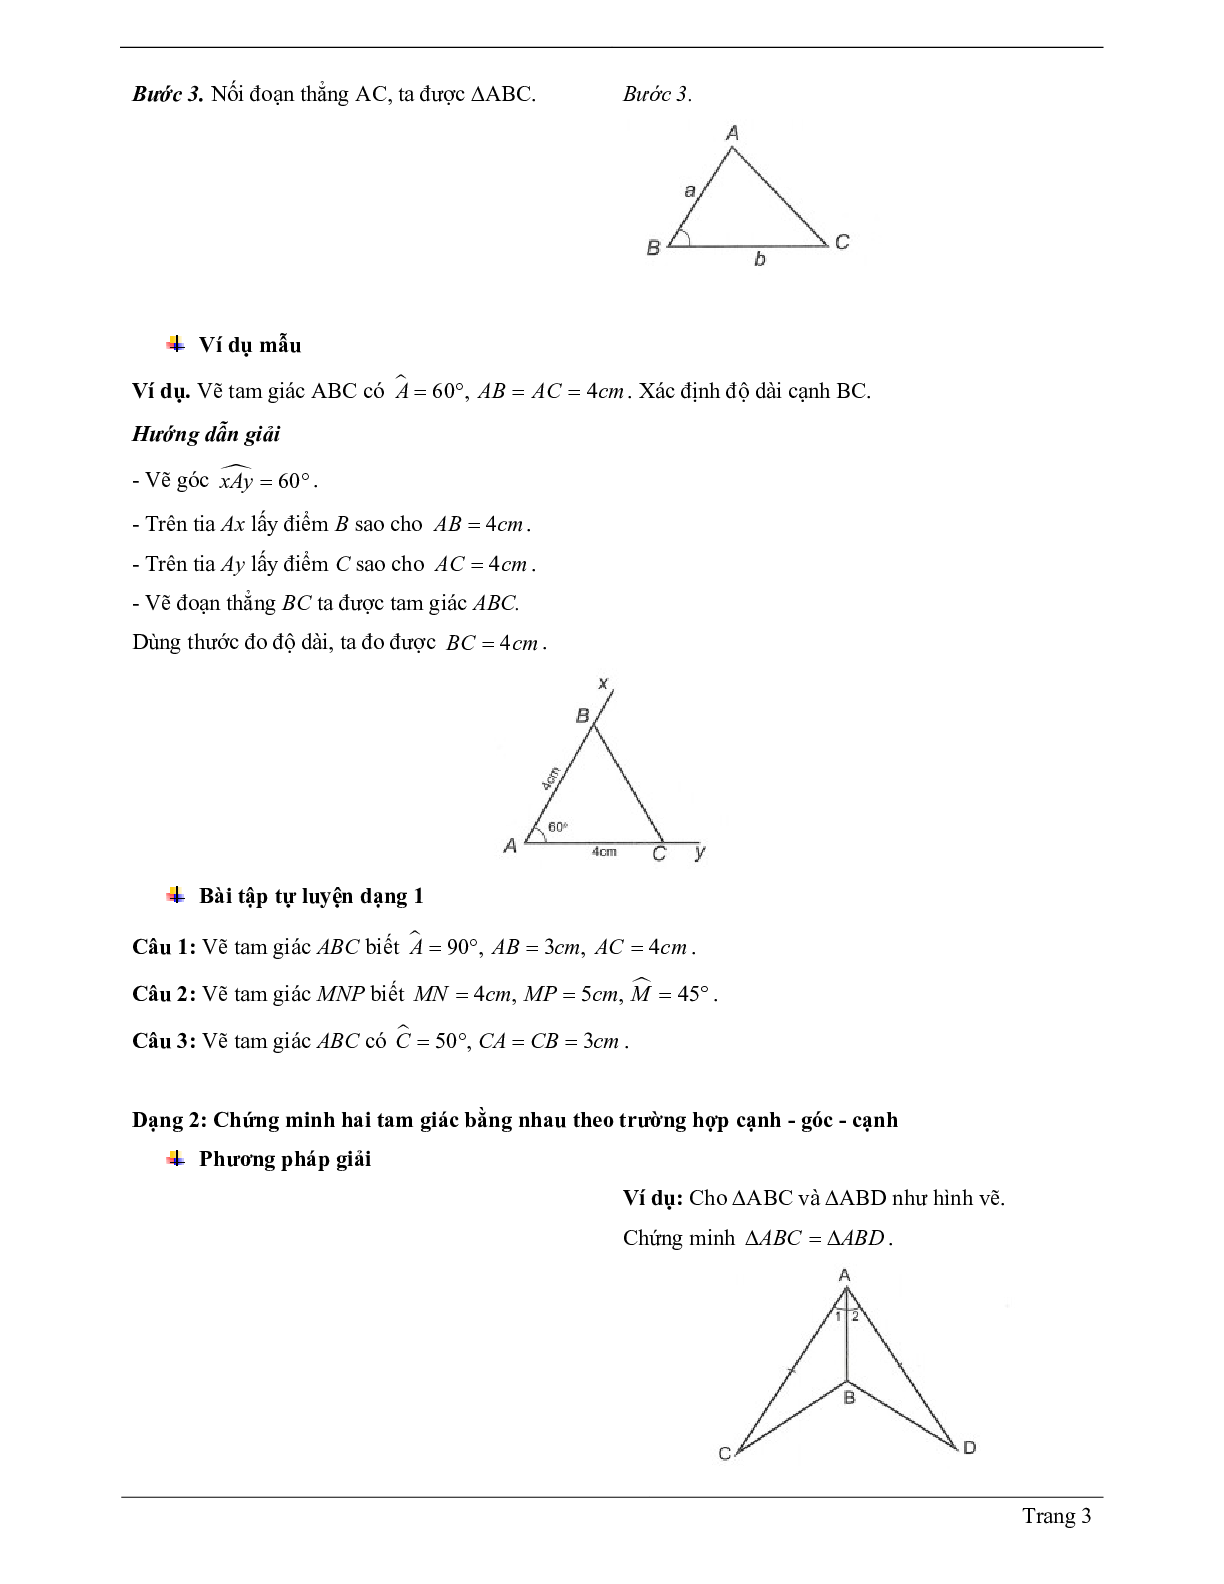 Lý thuyết Toán lớp 7 có đáp án: Trường hợp bằng nhau thứ hai của tam giác: cạnh - góc - cạnh (c.g.c) (trang 3)